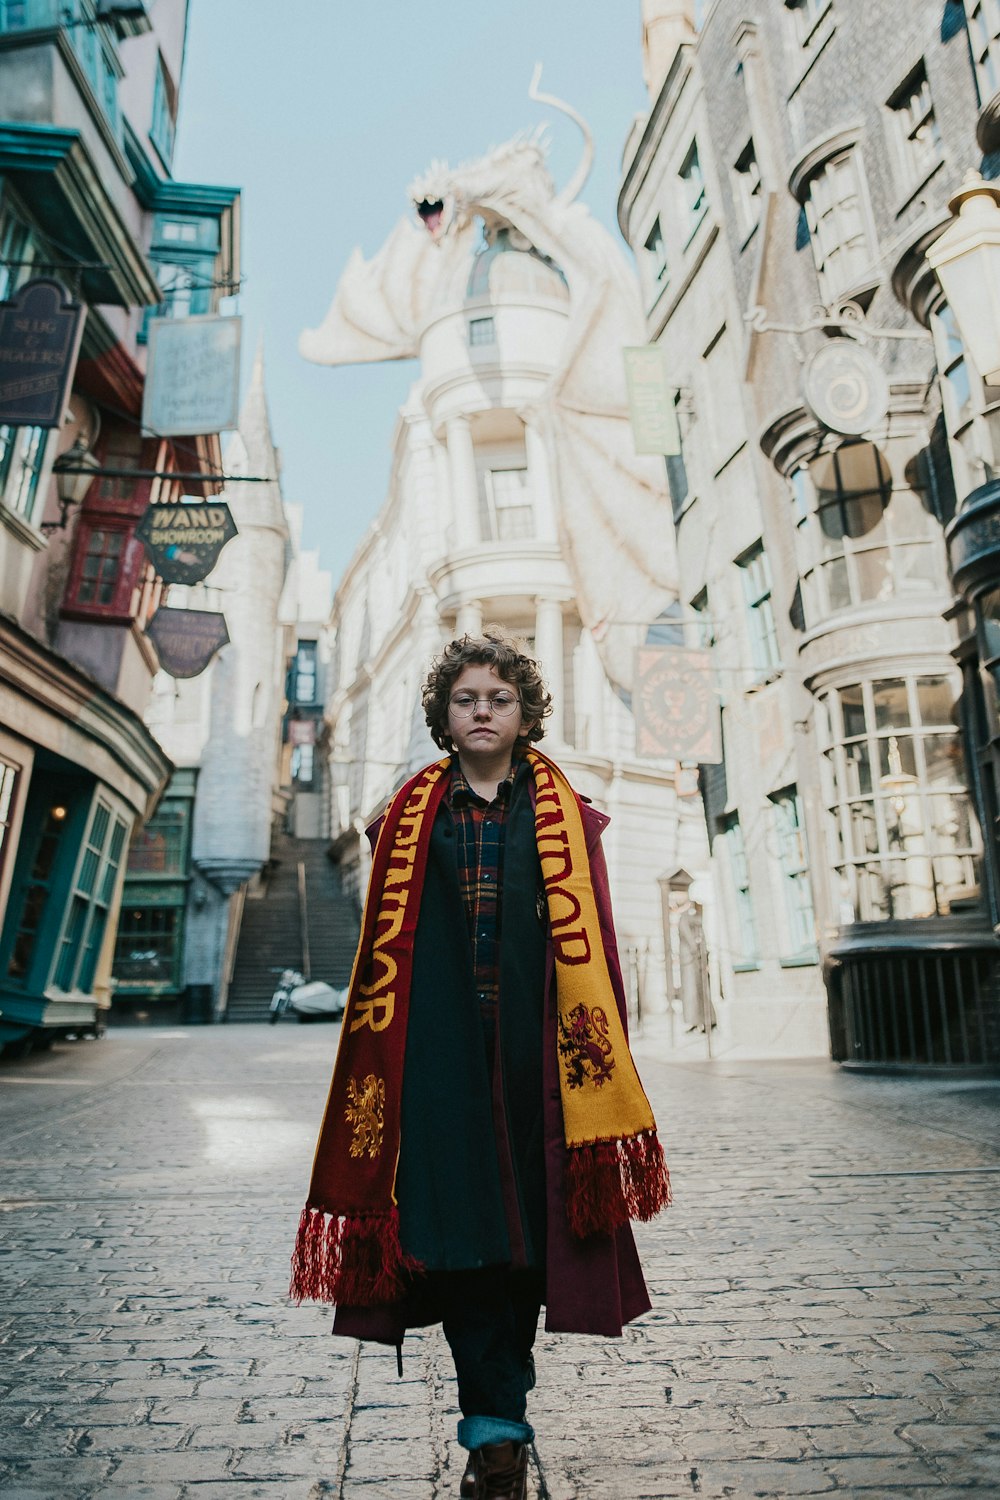 Un homme dans un costume de Harry Potter debout dans une rue de briques